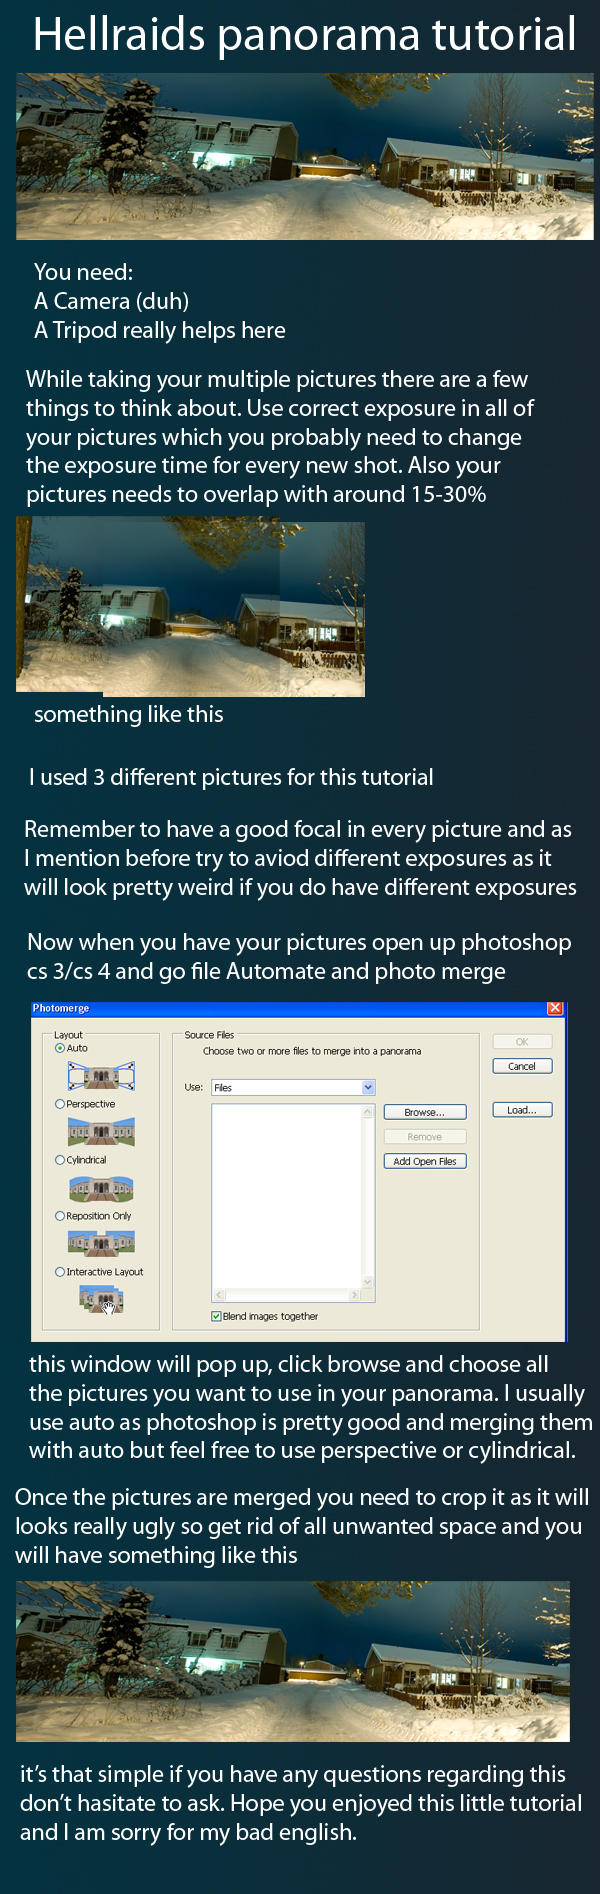 panorama_tutorial_by_hellraidgr.jpg